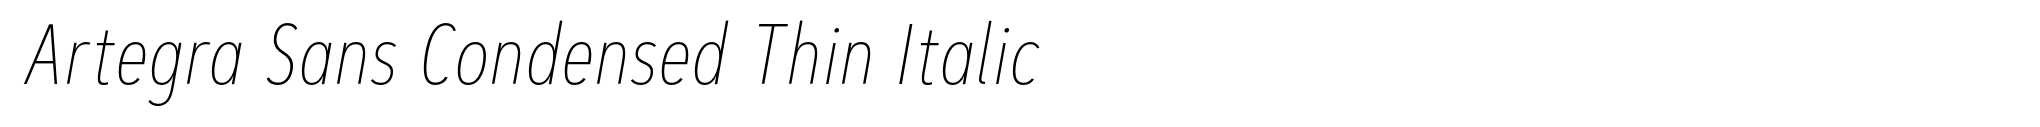 Artegra Sans Condensed Thin Italic image